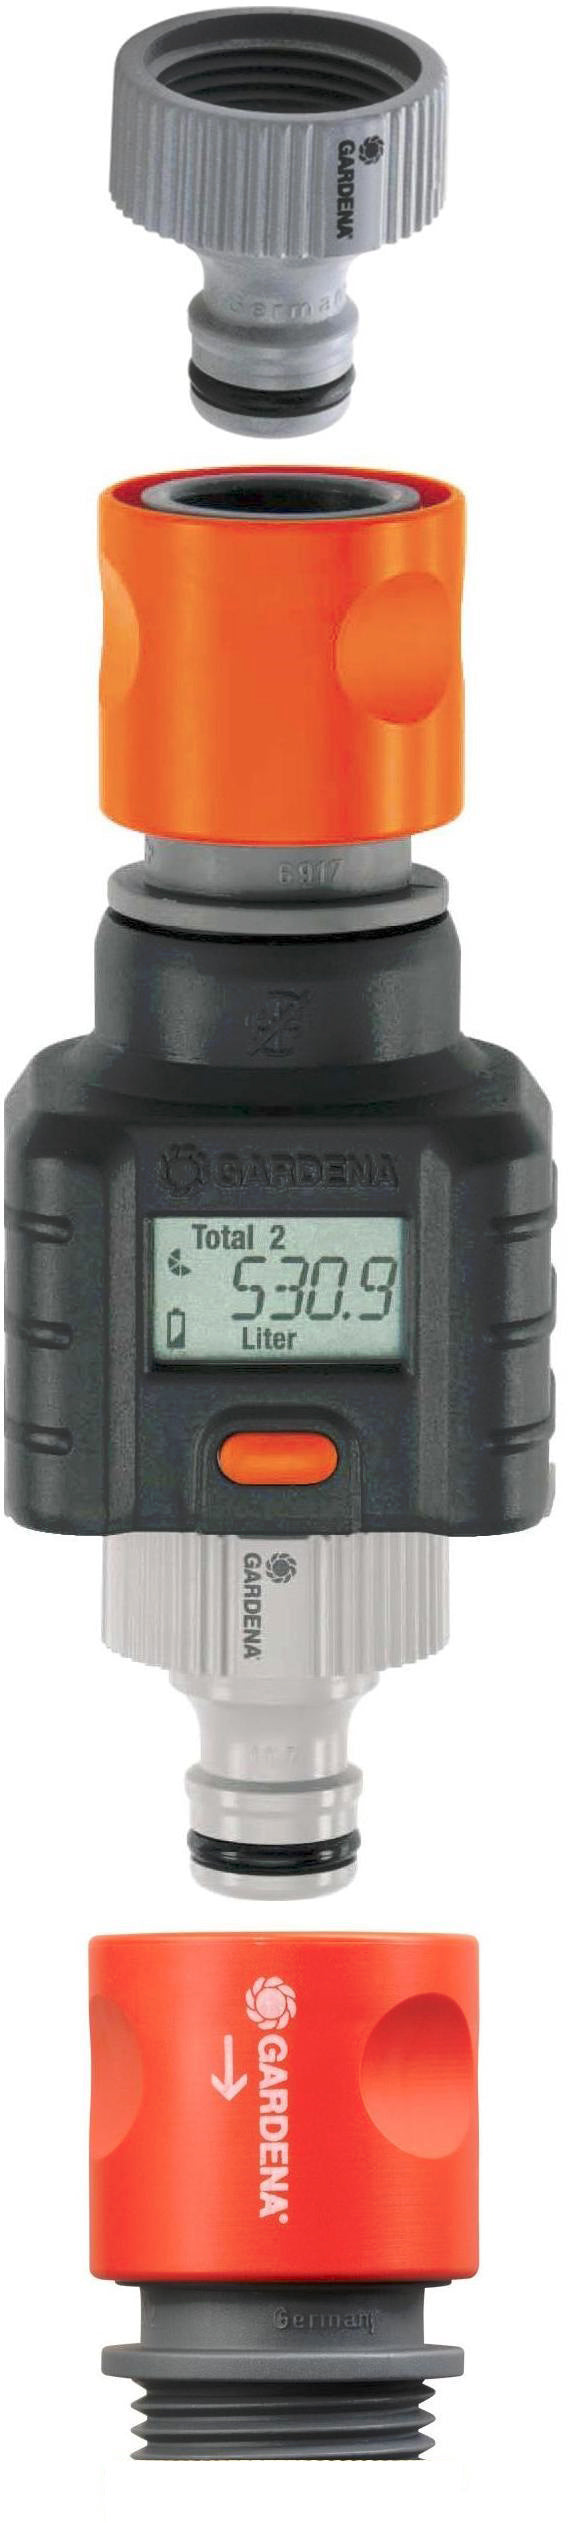 Gardena Smart Flow Water Meter